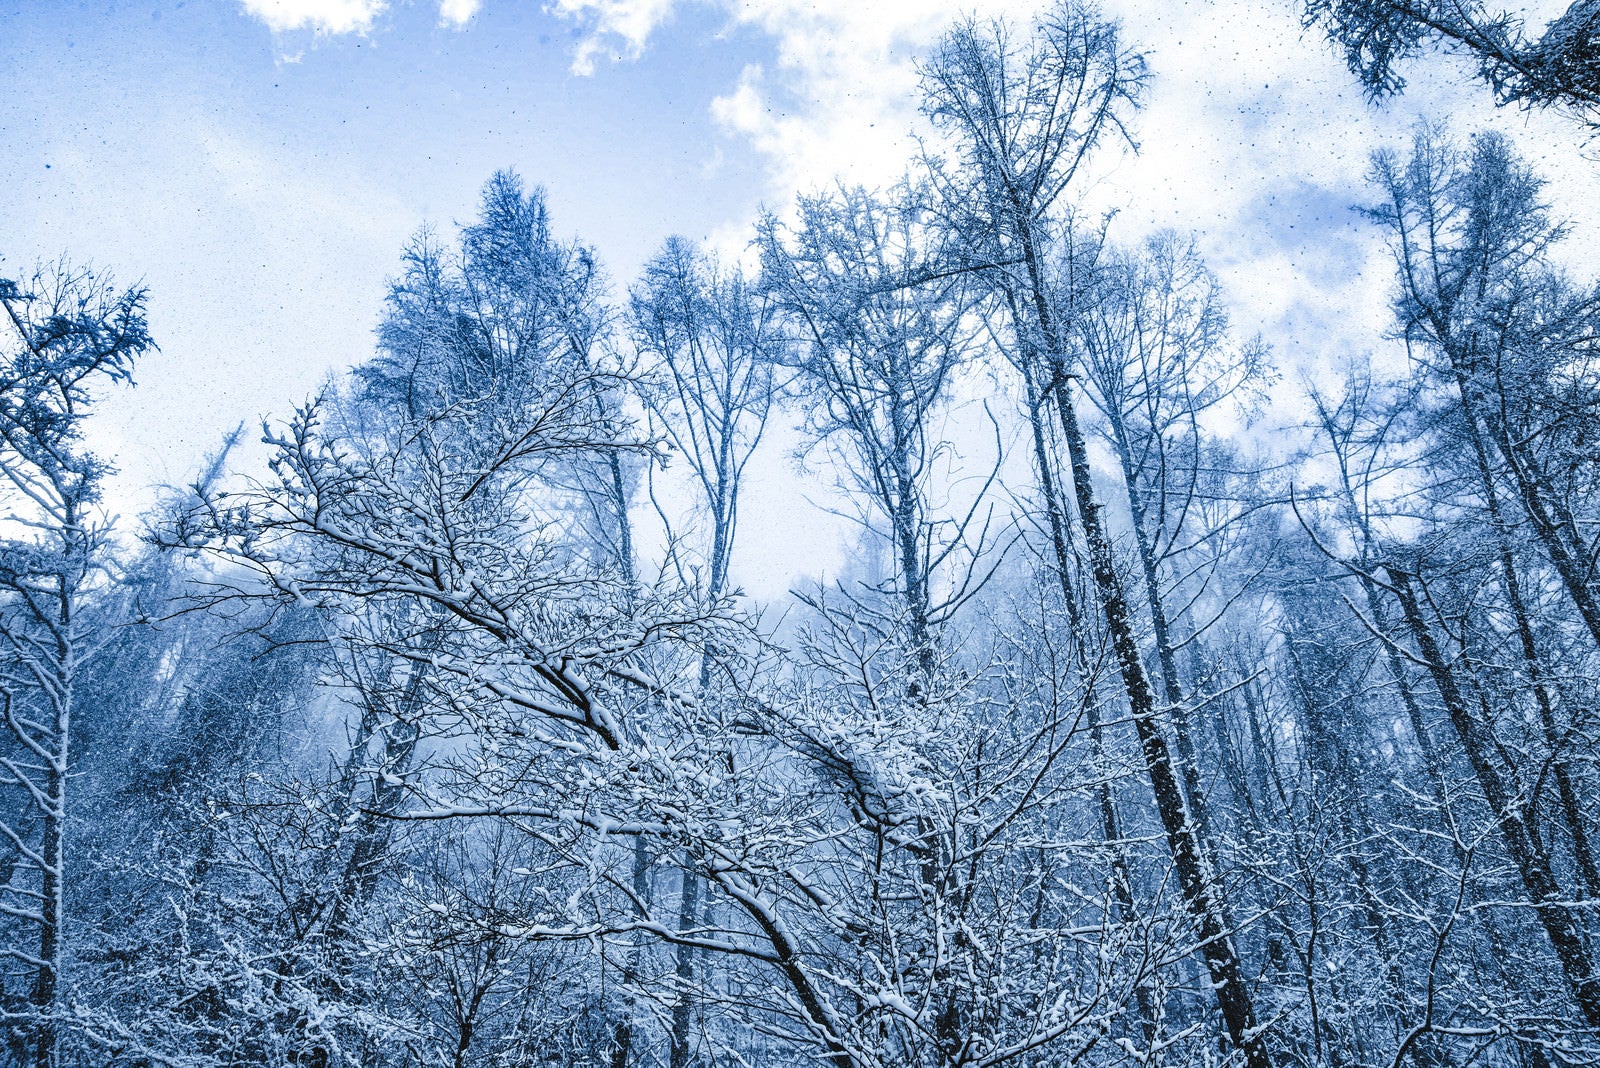 「雪化粧した森と垂れ雪」の写真